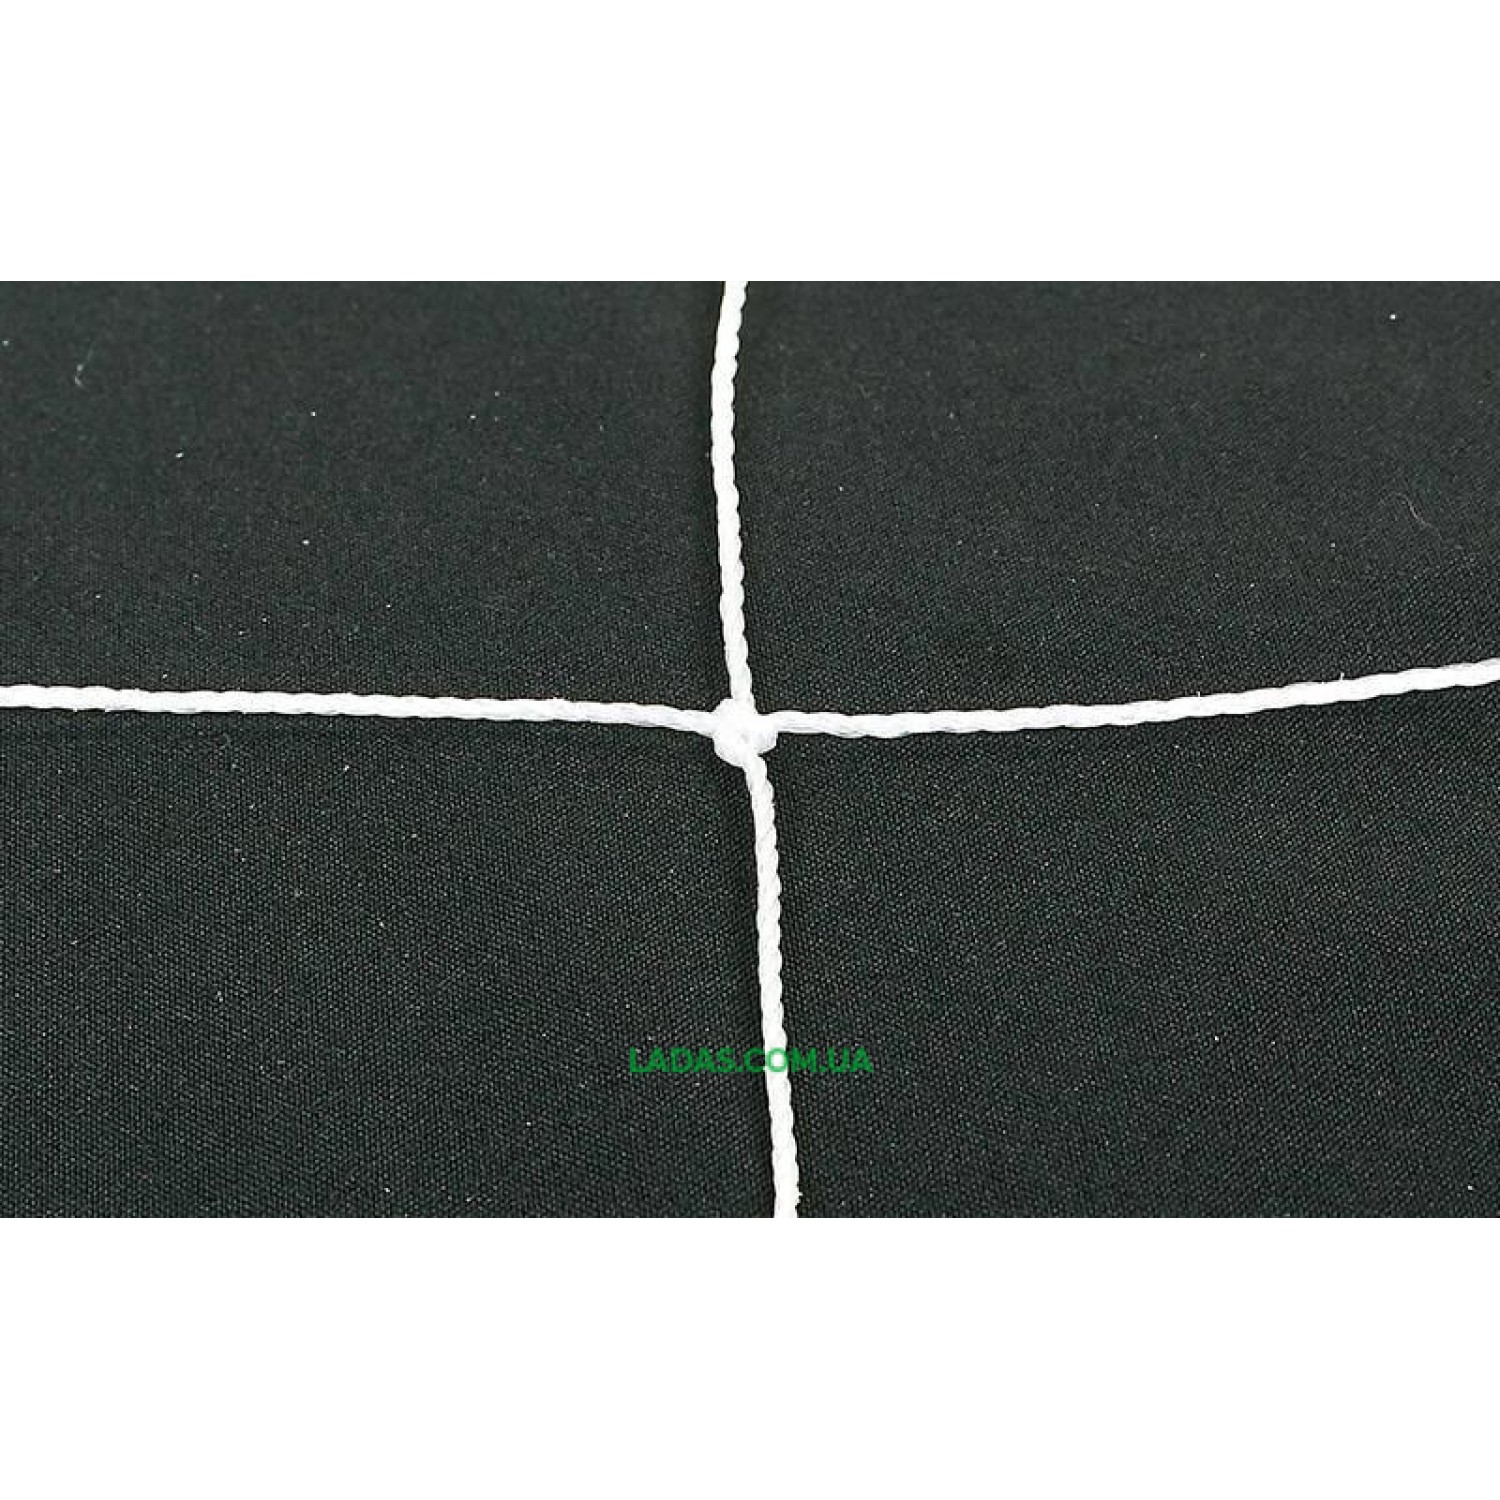 Сетка на ворота футбольные любительская узловая (2шт) C-5372 (PP 1,5мм, ячейка 14x14см, PVC чехол)